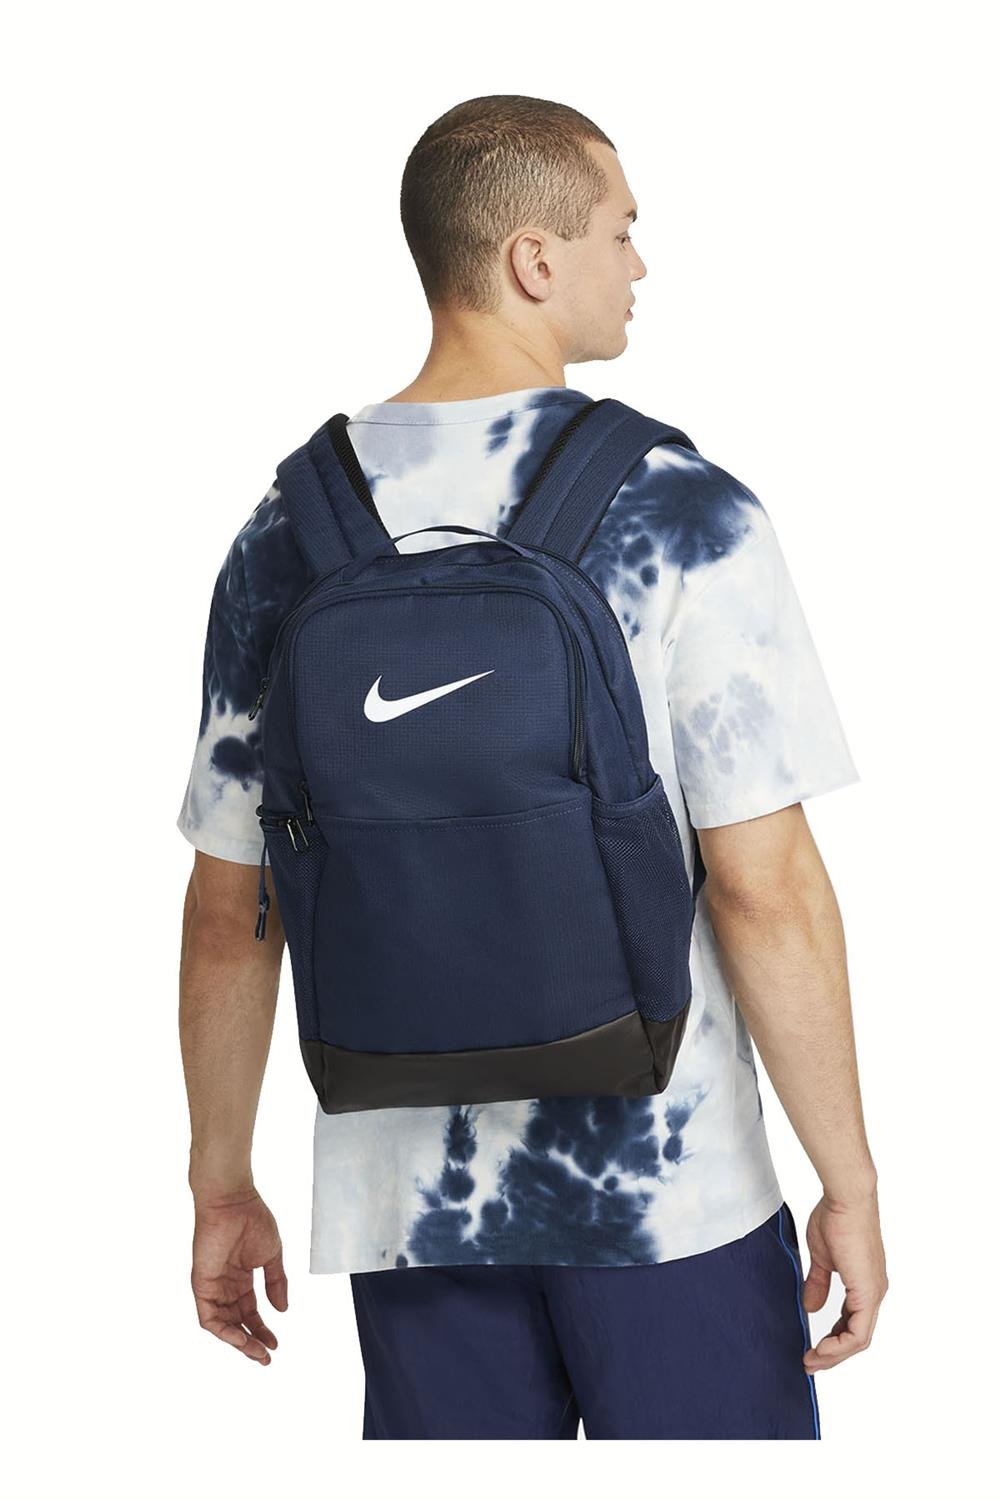 Nike Brasilia 9.5 24L DH7709-410 Backpack Sırt Çantası Unisex Sırt